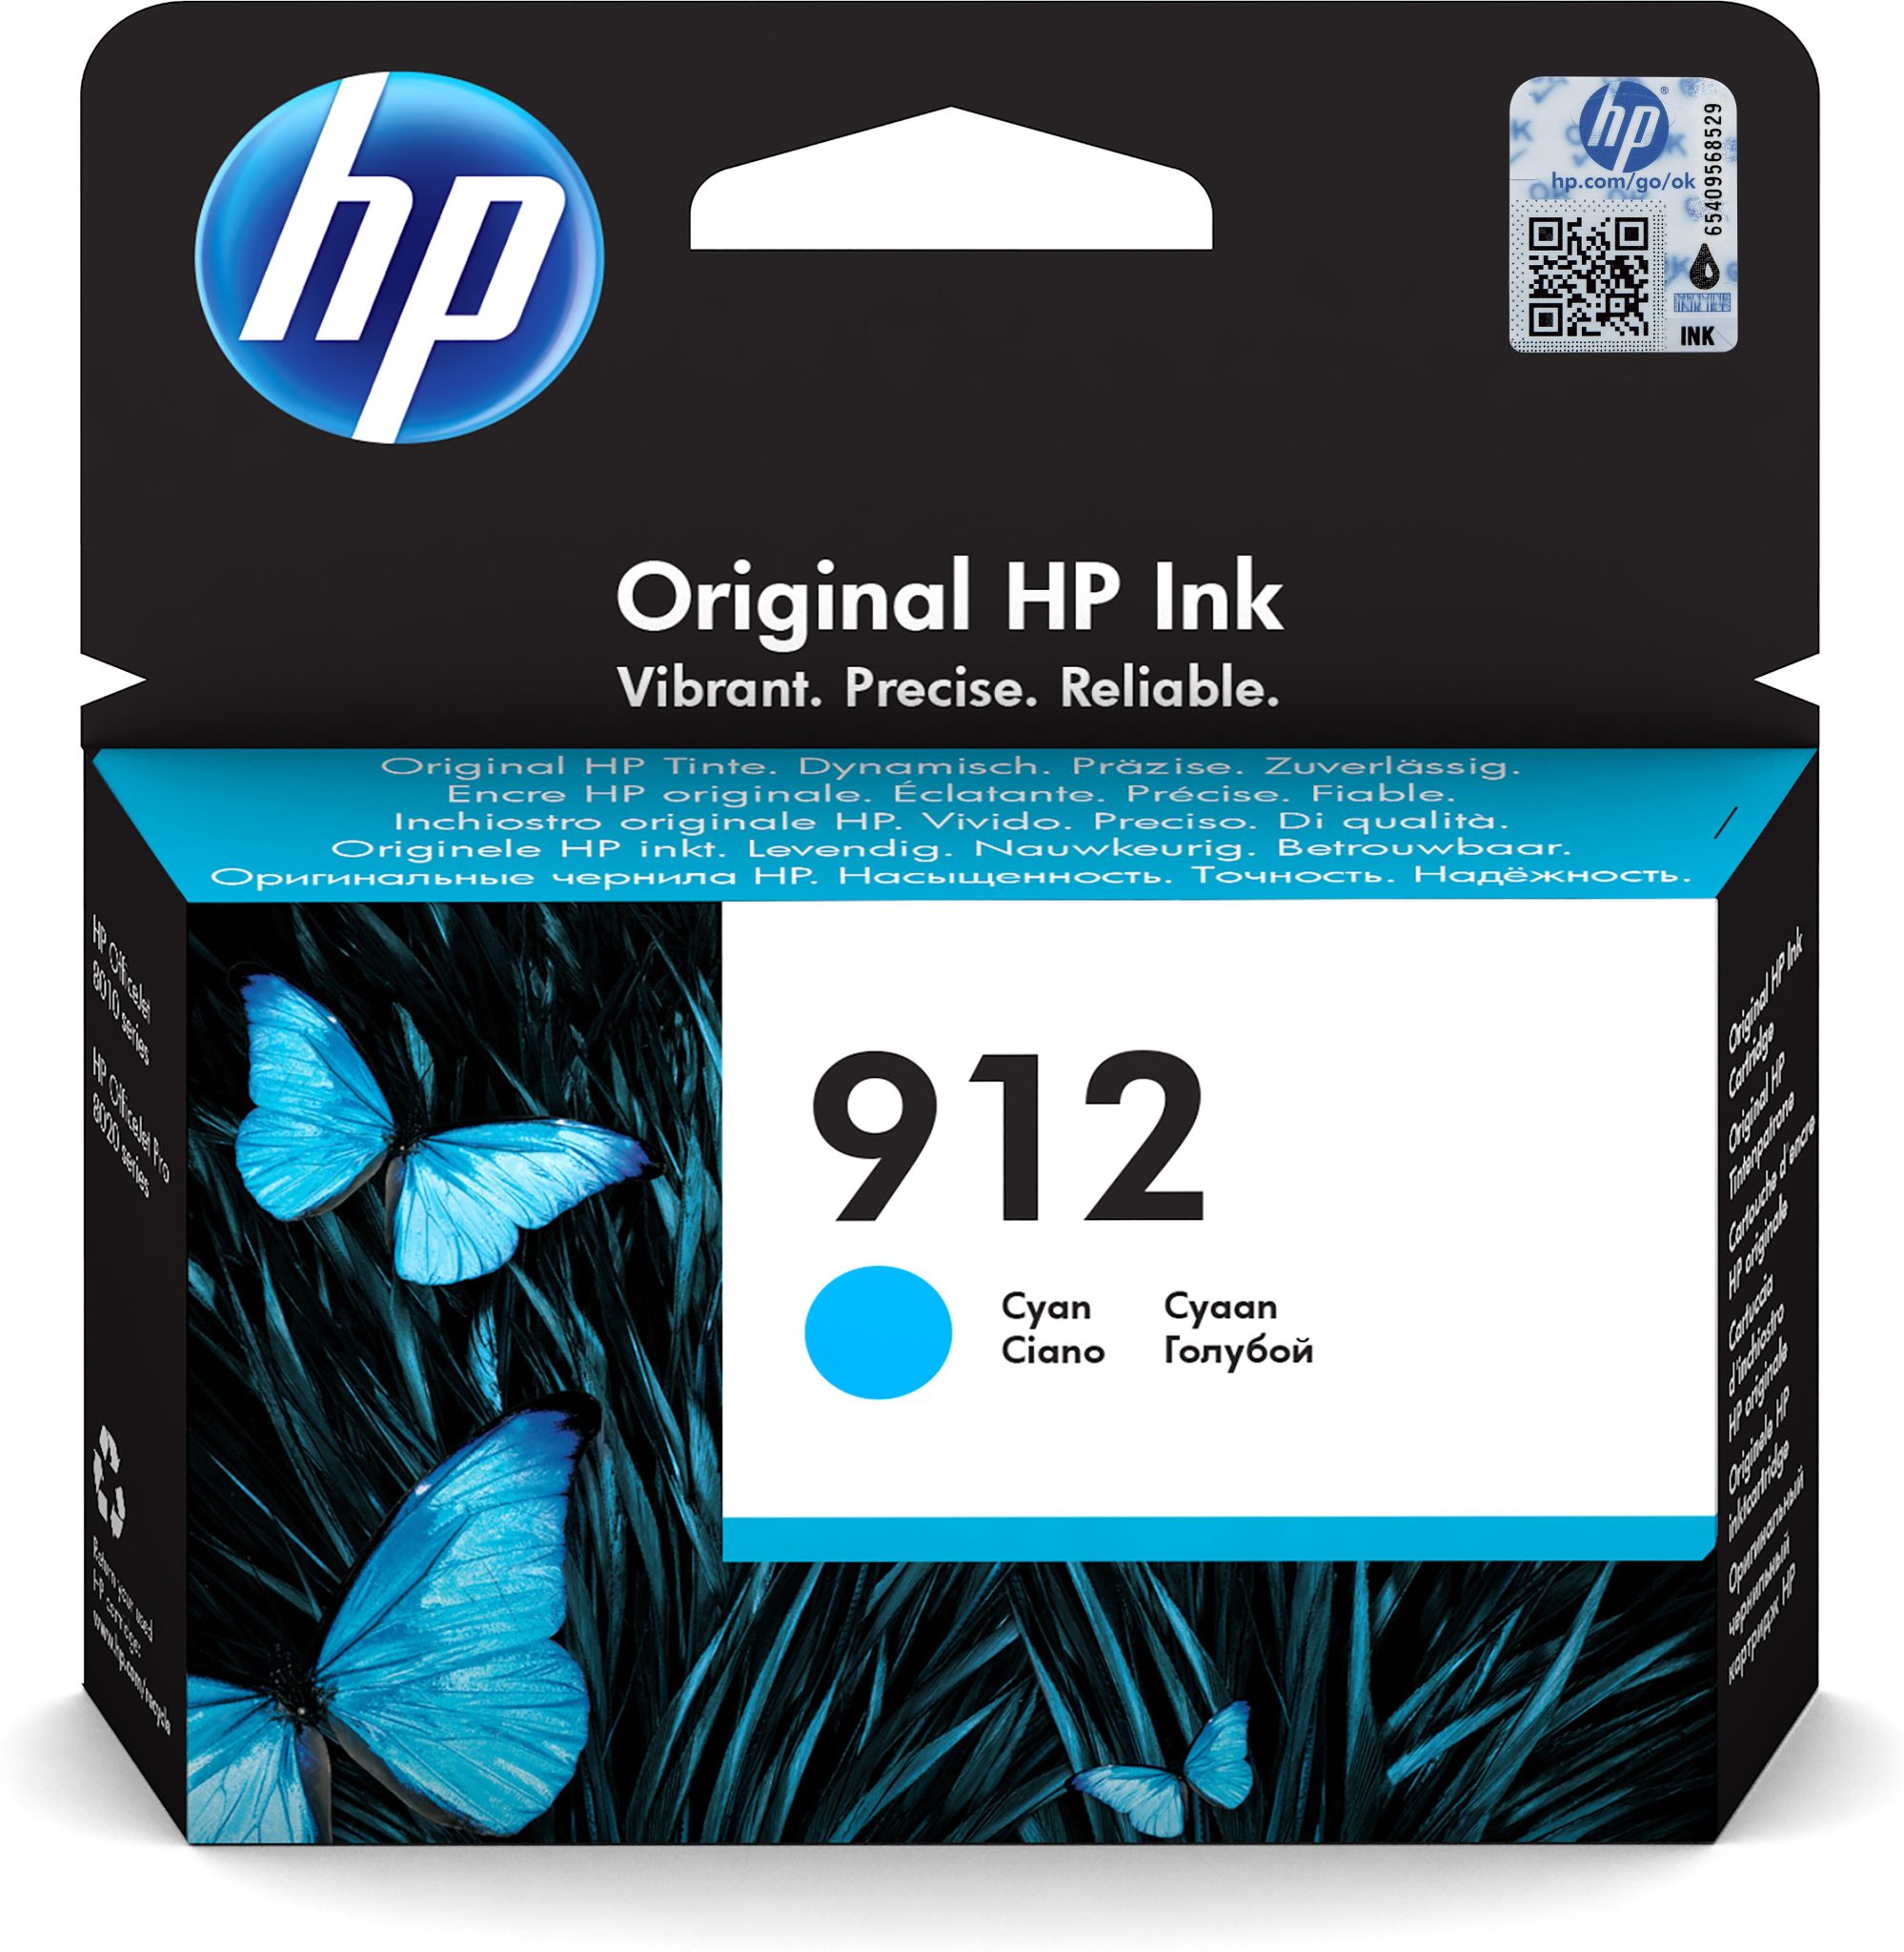 Hp 912 cyan ink cartridge